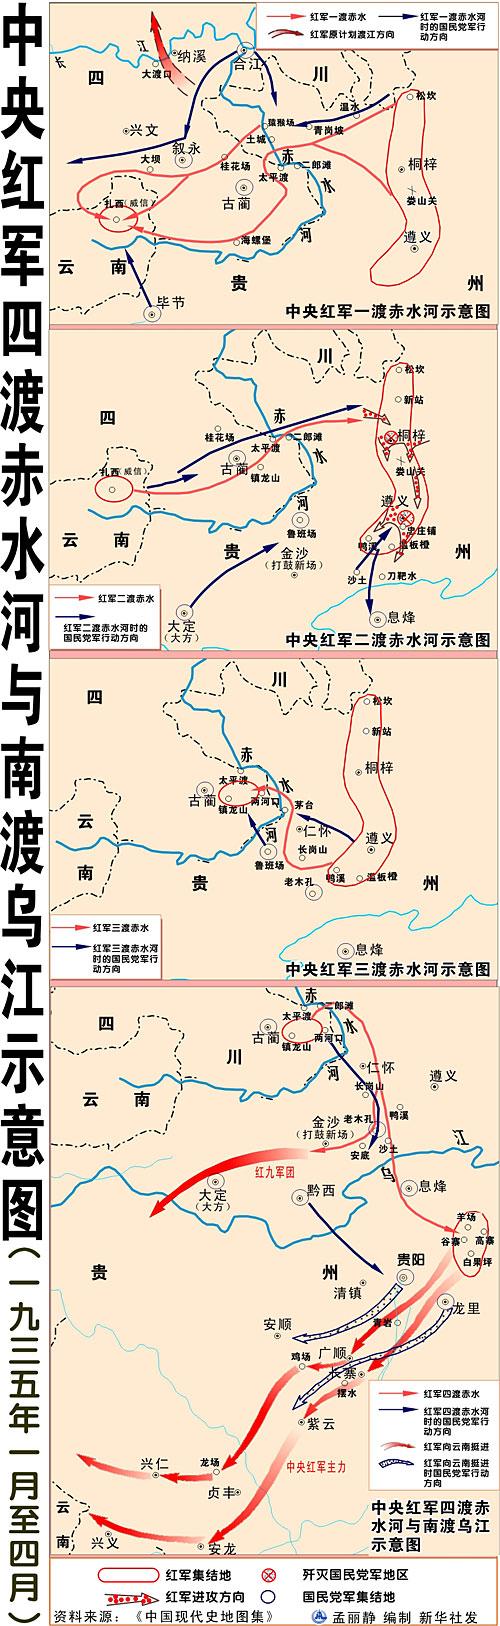 战史今日1月4日红军突破乌江天险